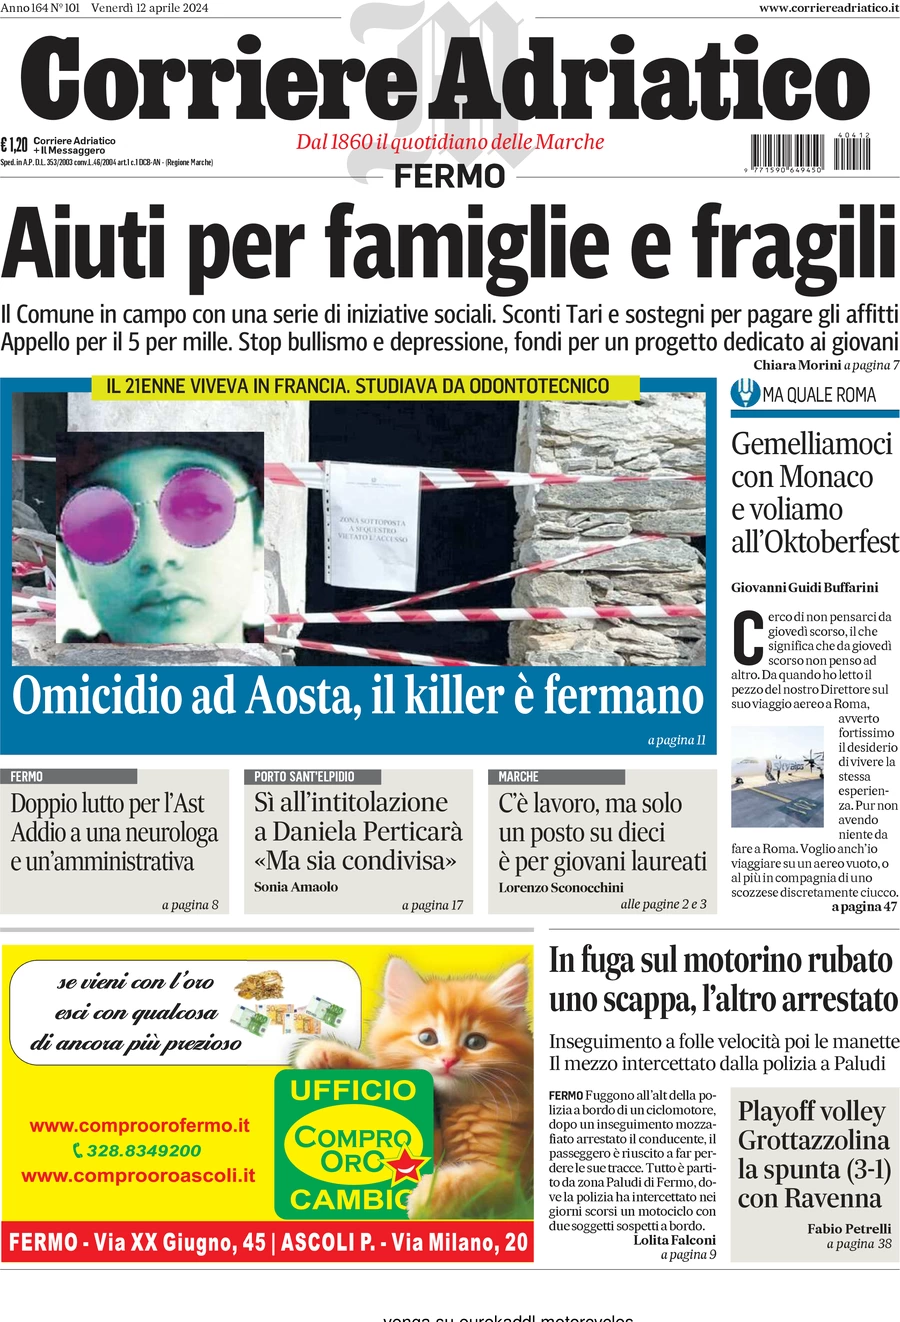 anteprima della prima pagina di corriere-adriatico-fermo del 12/04/2024